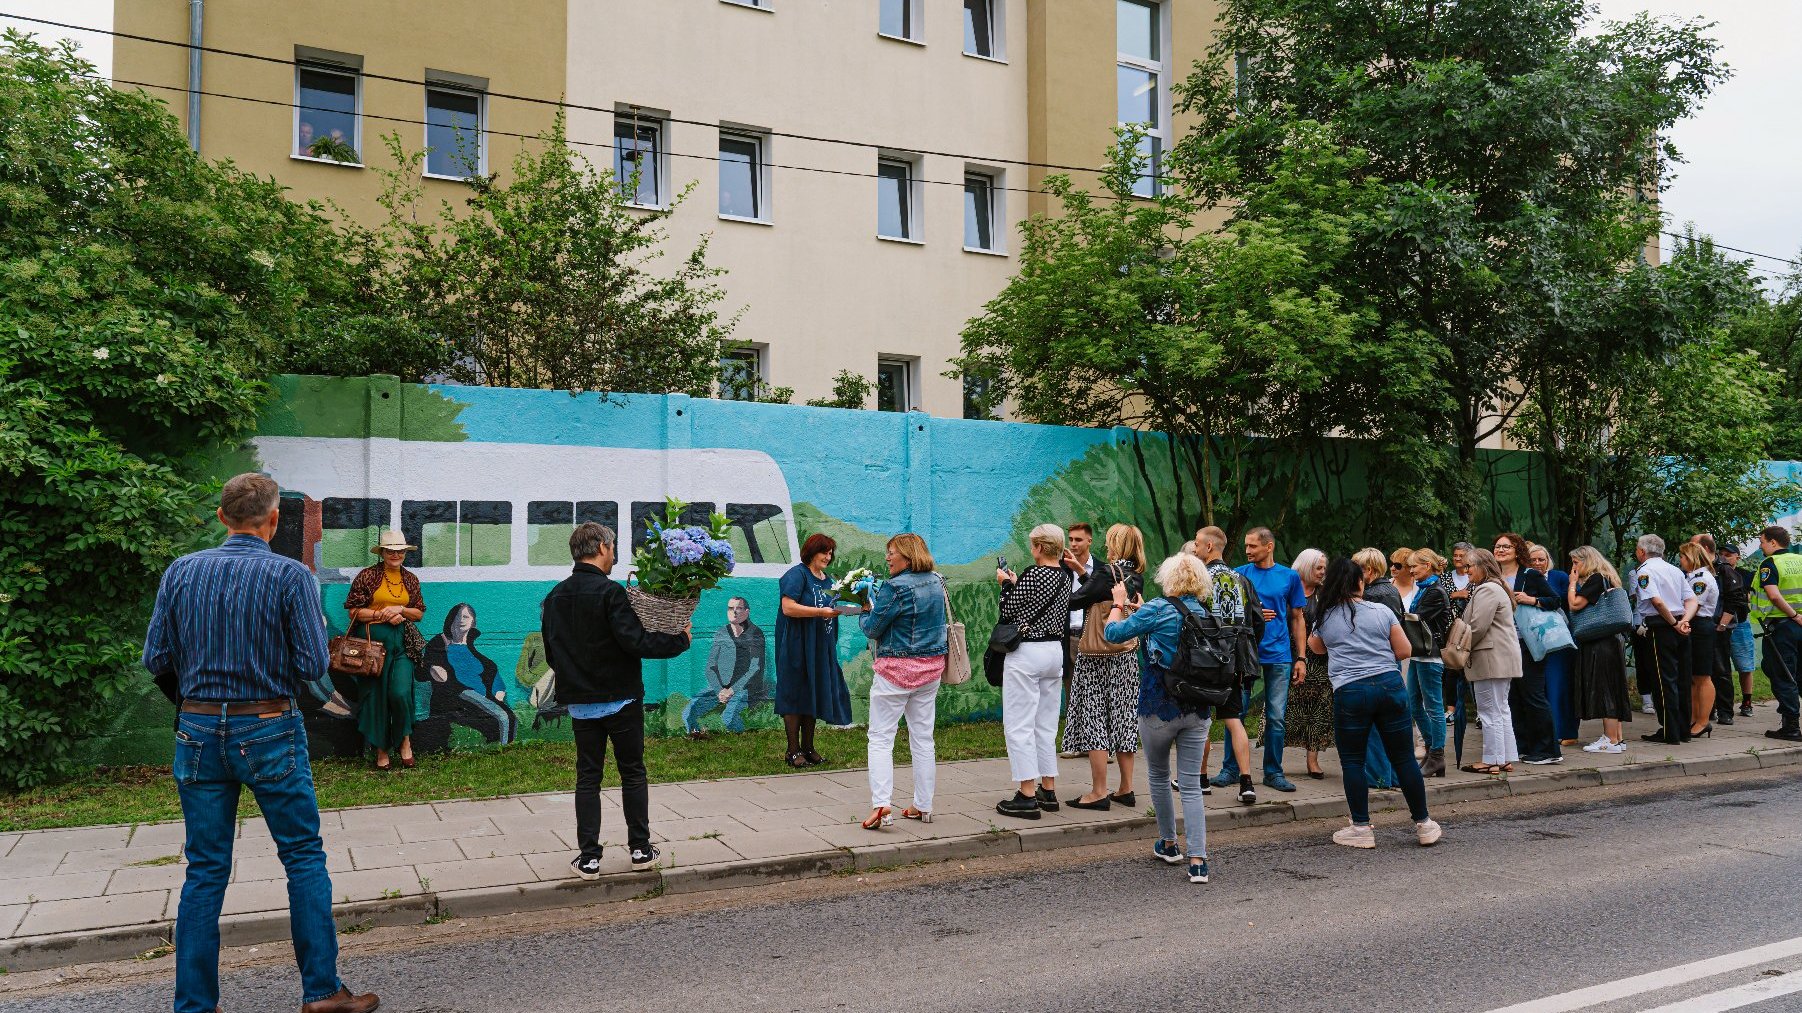 Na zdjęciu grupa ludzi zebrana przed murem, na murze mural